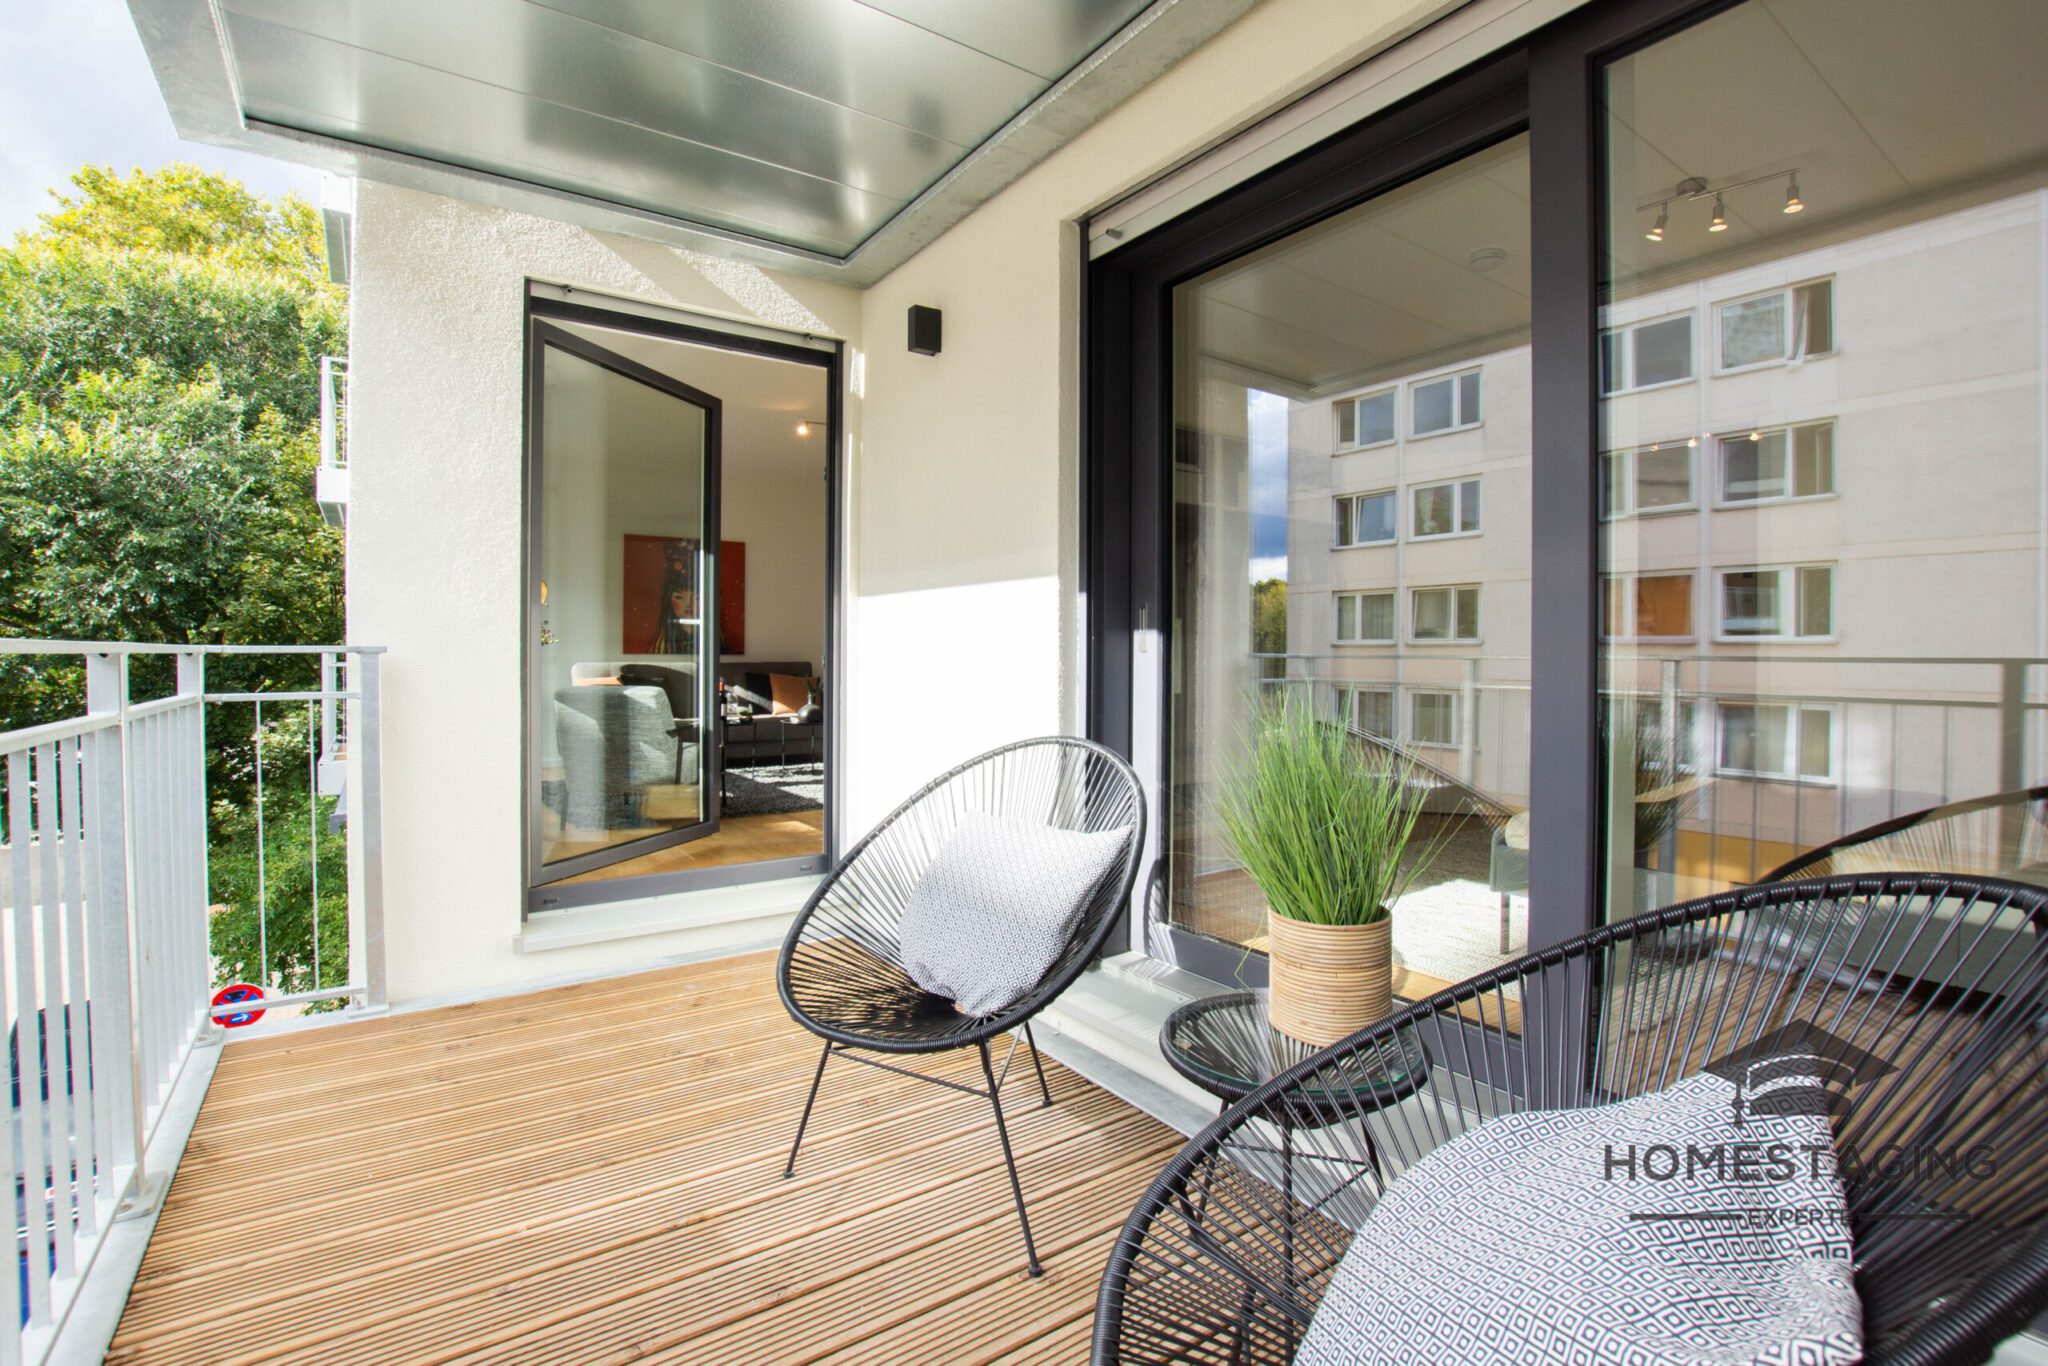 Balkon herrichten - Verkaufsturbo Home Staging